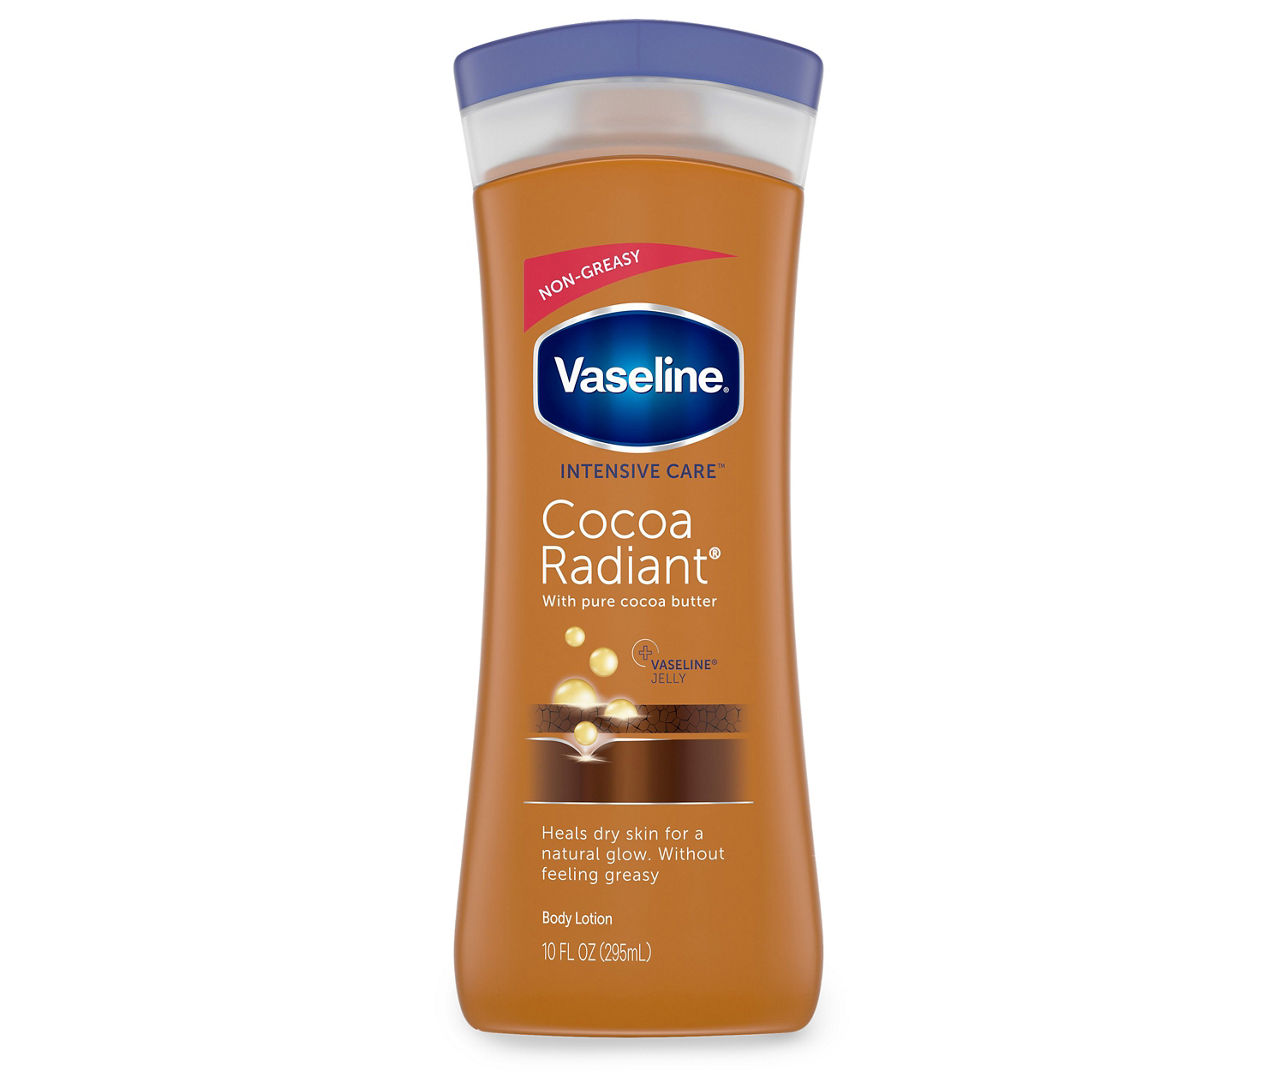 Tag ud Framework Minimer Vaseline Vaseline Intensive Care Cocoa Radiant Lotion 10 fl. oz. Squeeze  Bottle | Big Lots